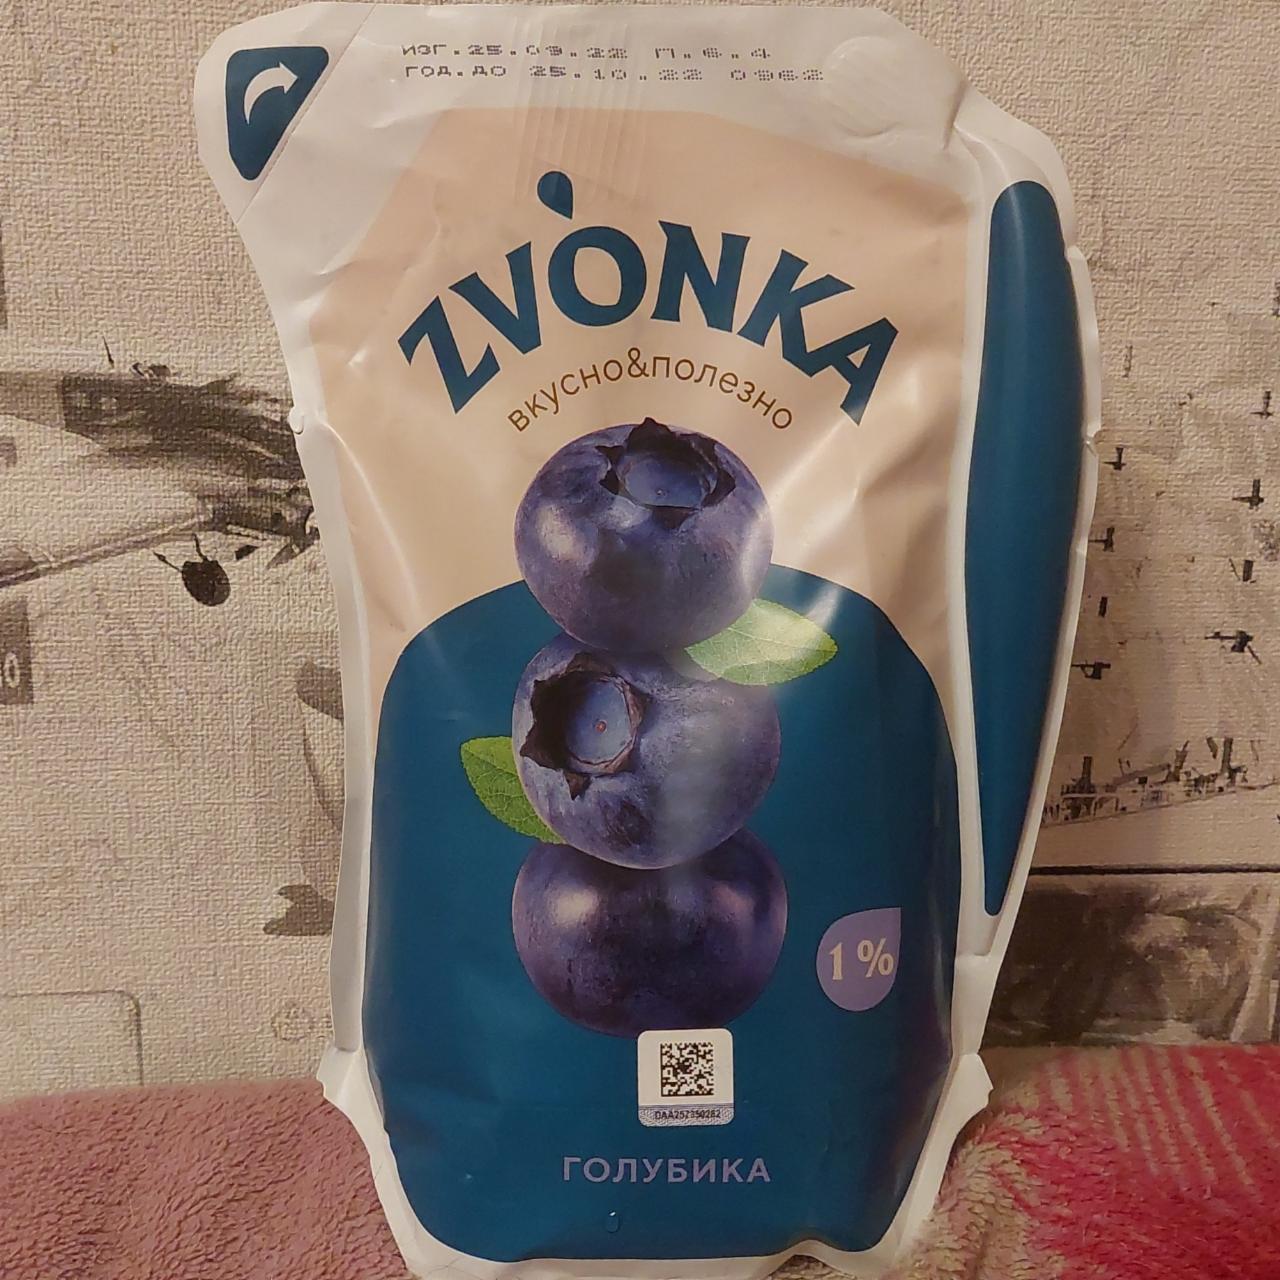 Фото - питьевой йогурт черника Zvonka